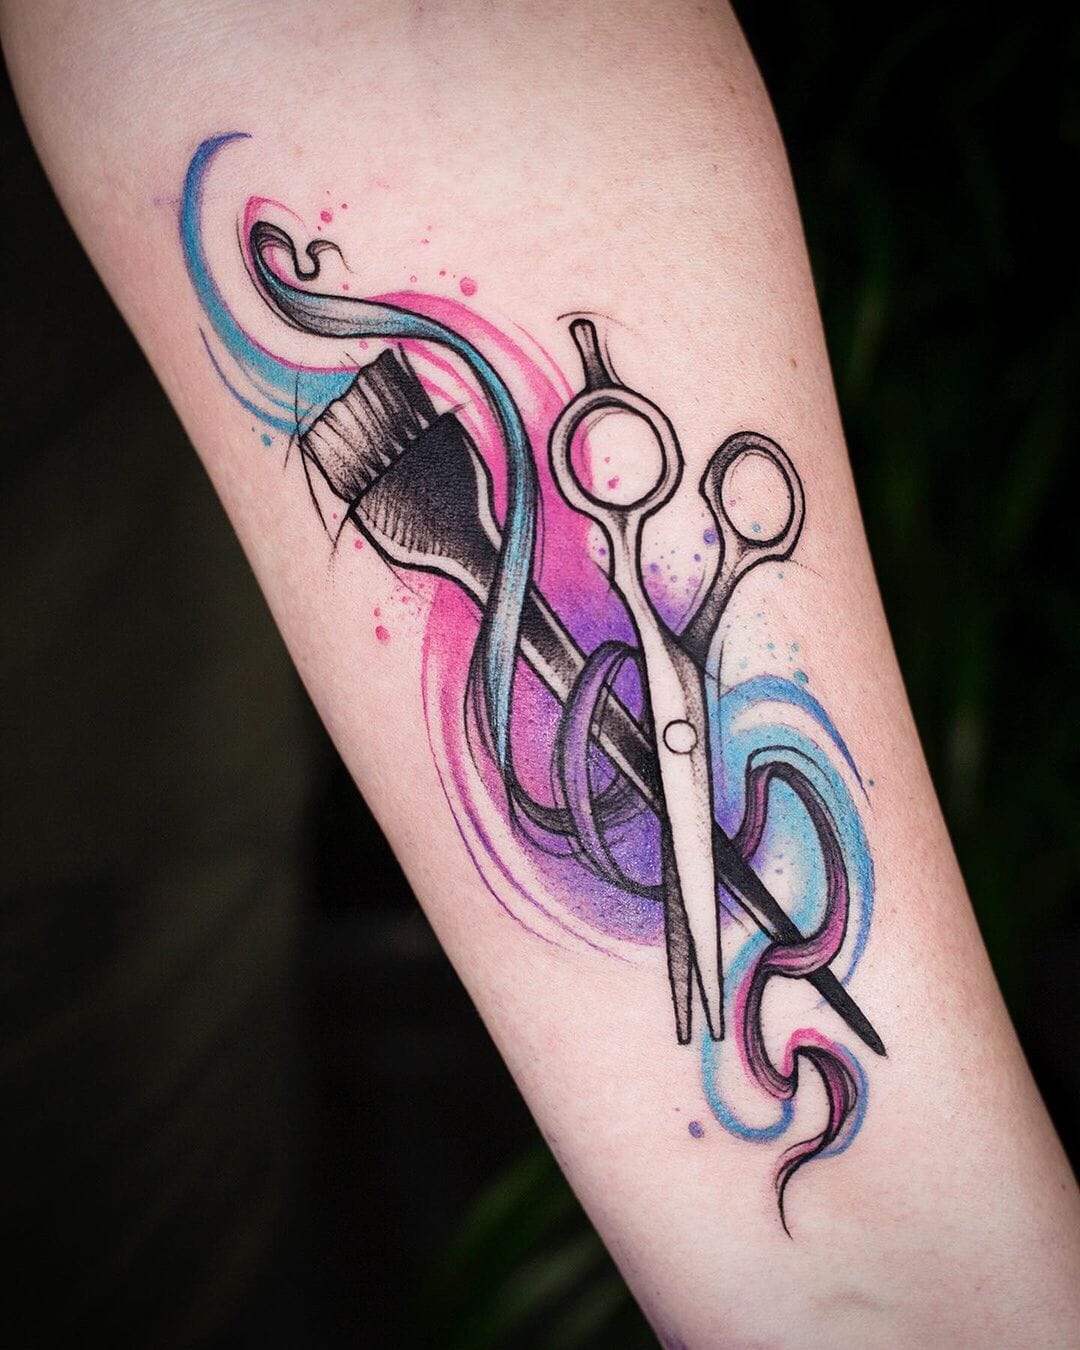 Barber Scissors Tattoo by @sailorose_ - Tattoogrid.net